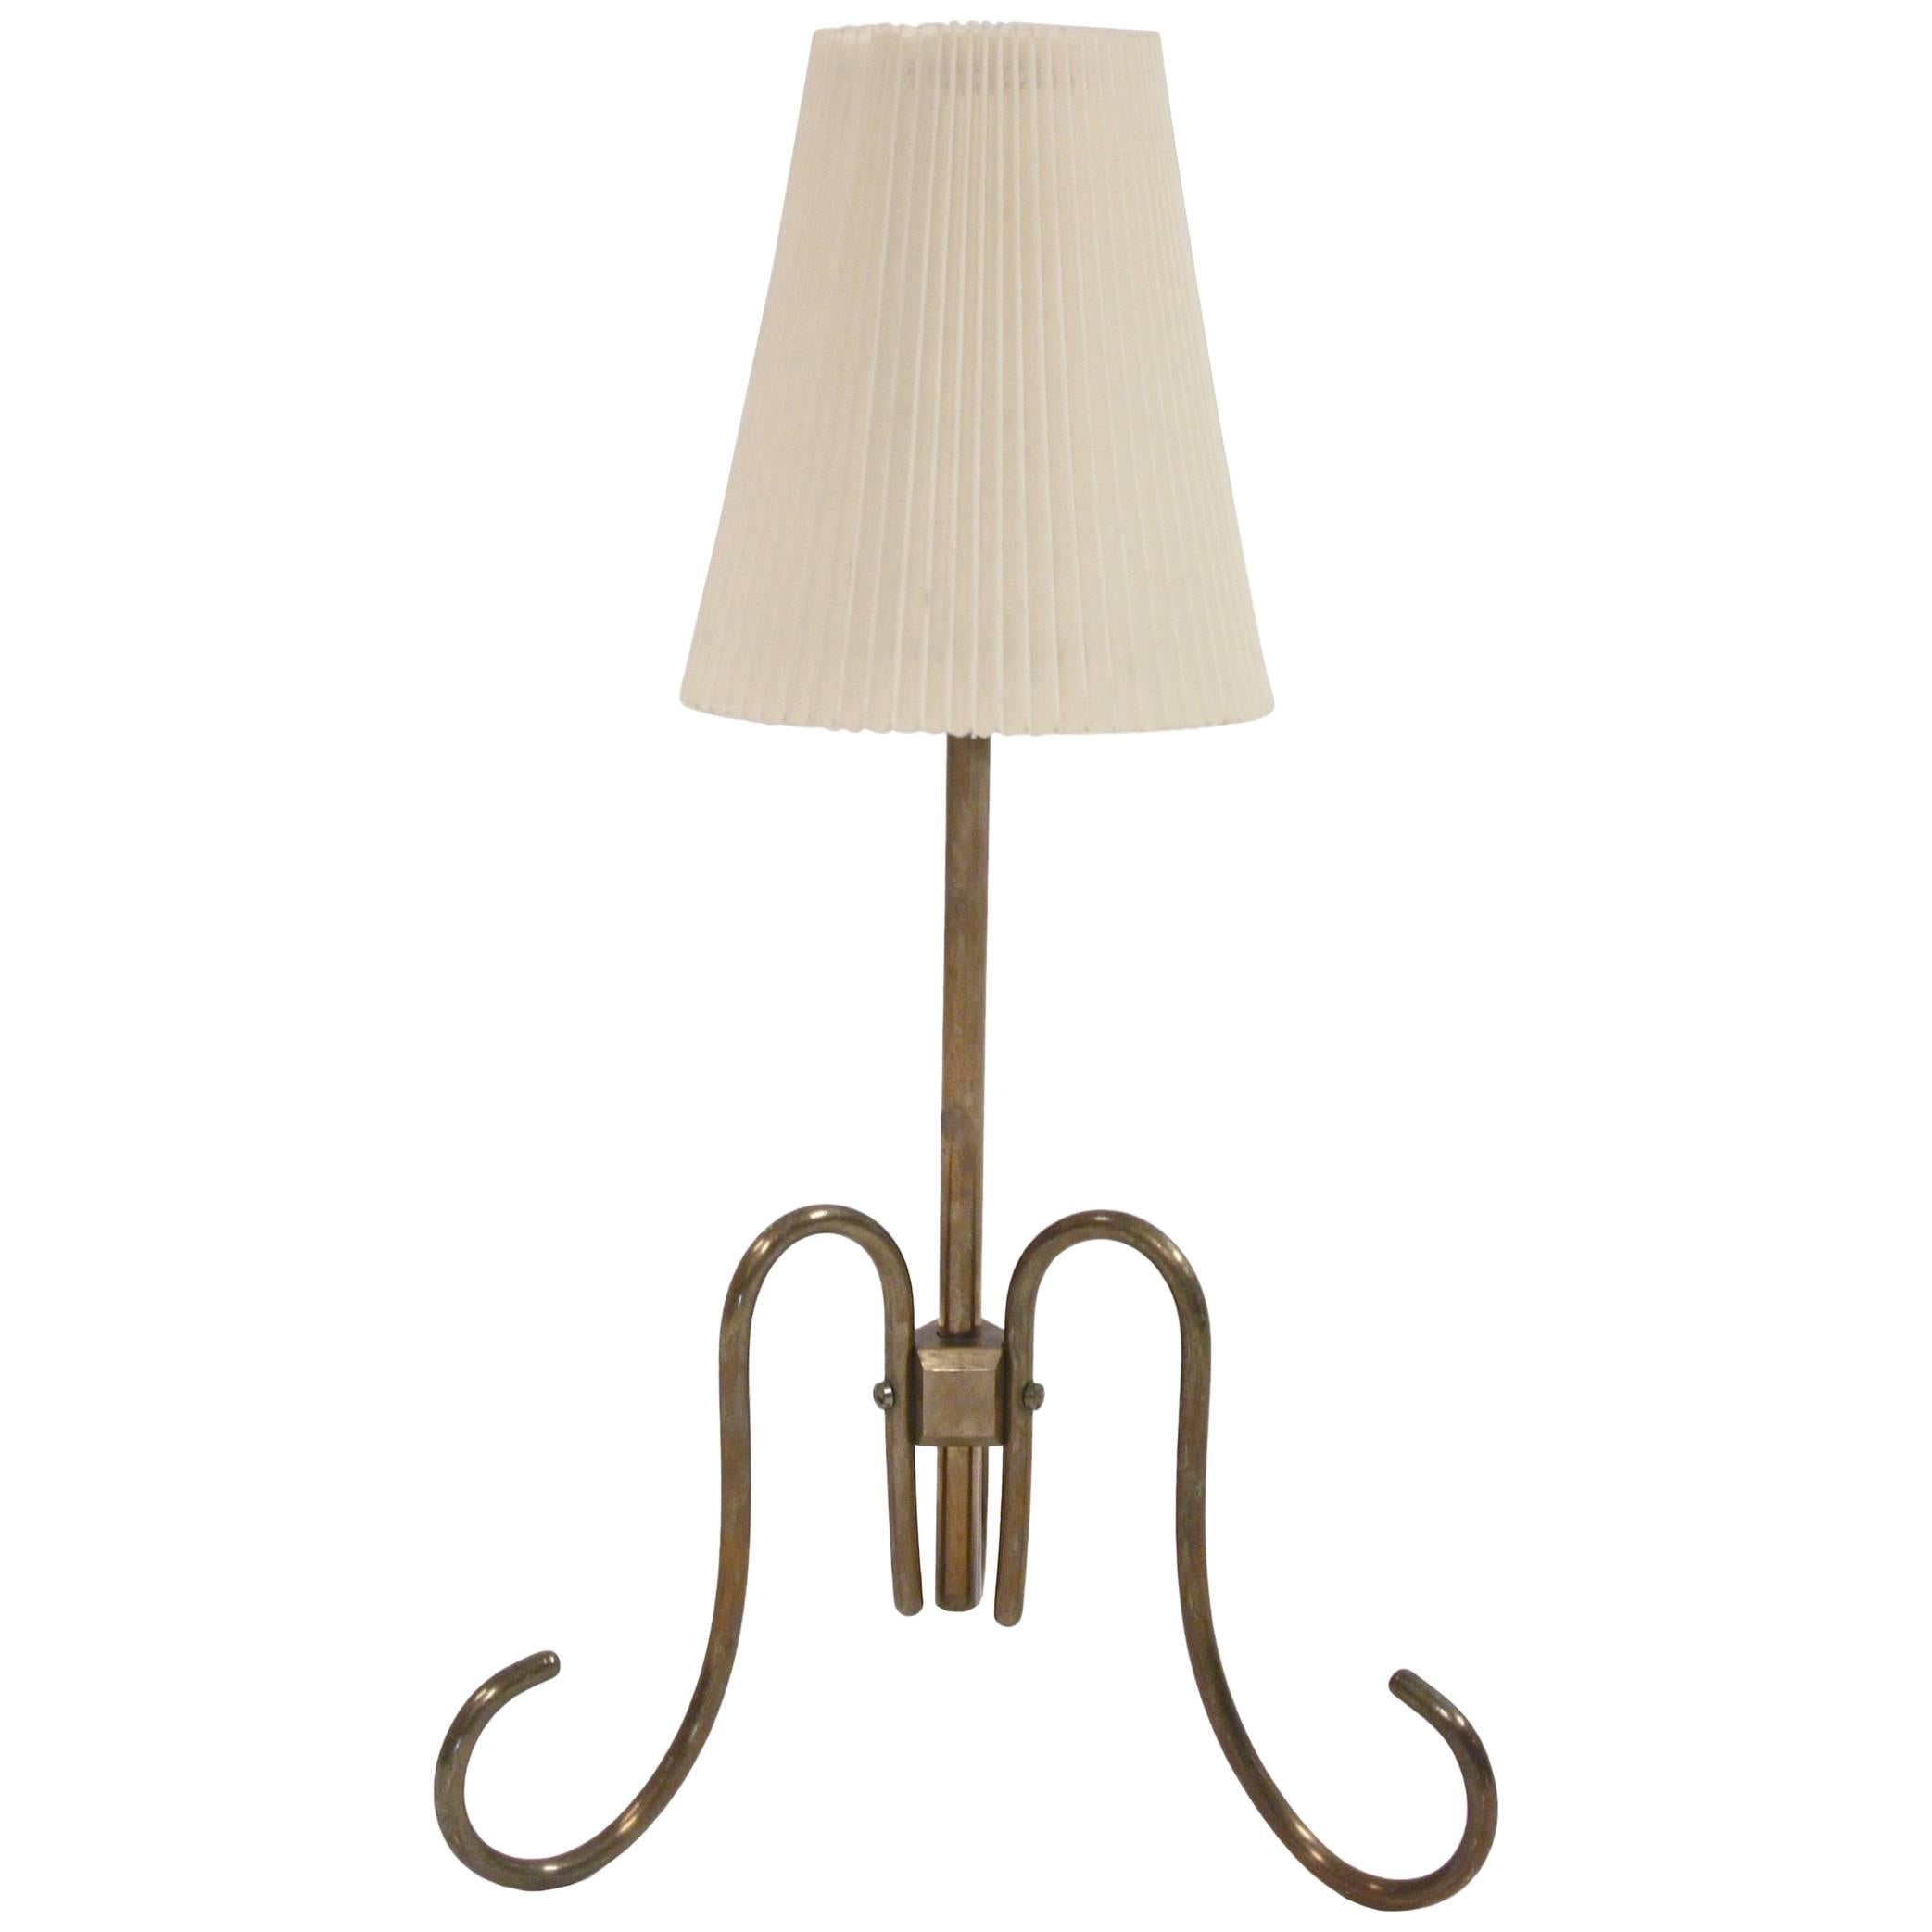 Wonderful Midcentury Table Lamp, 1960s